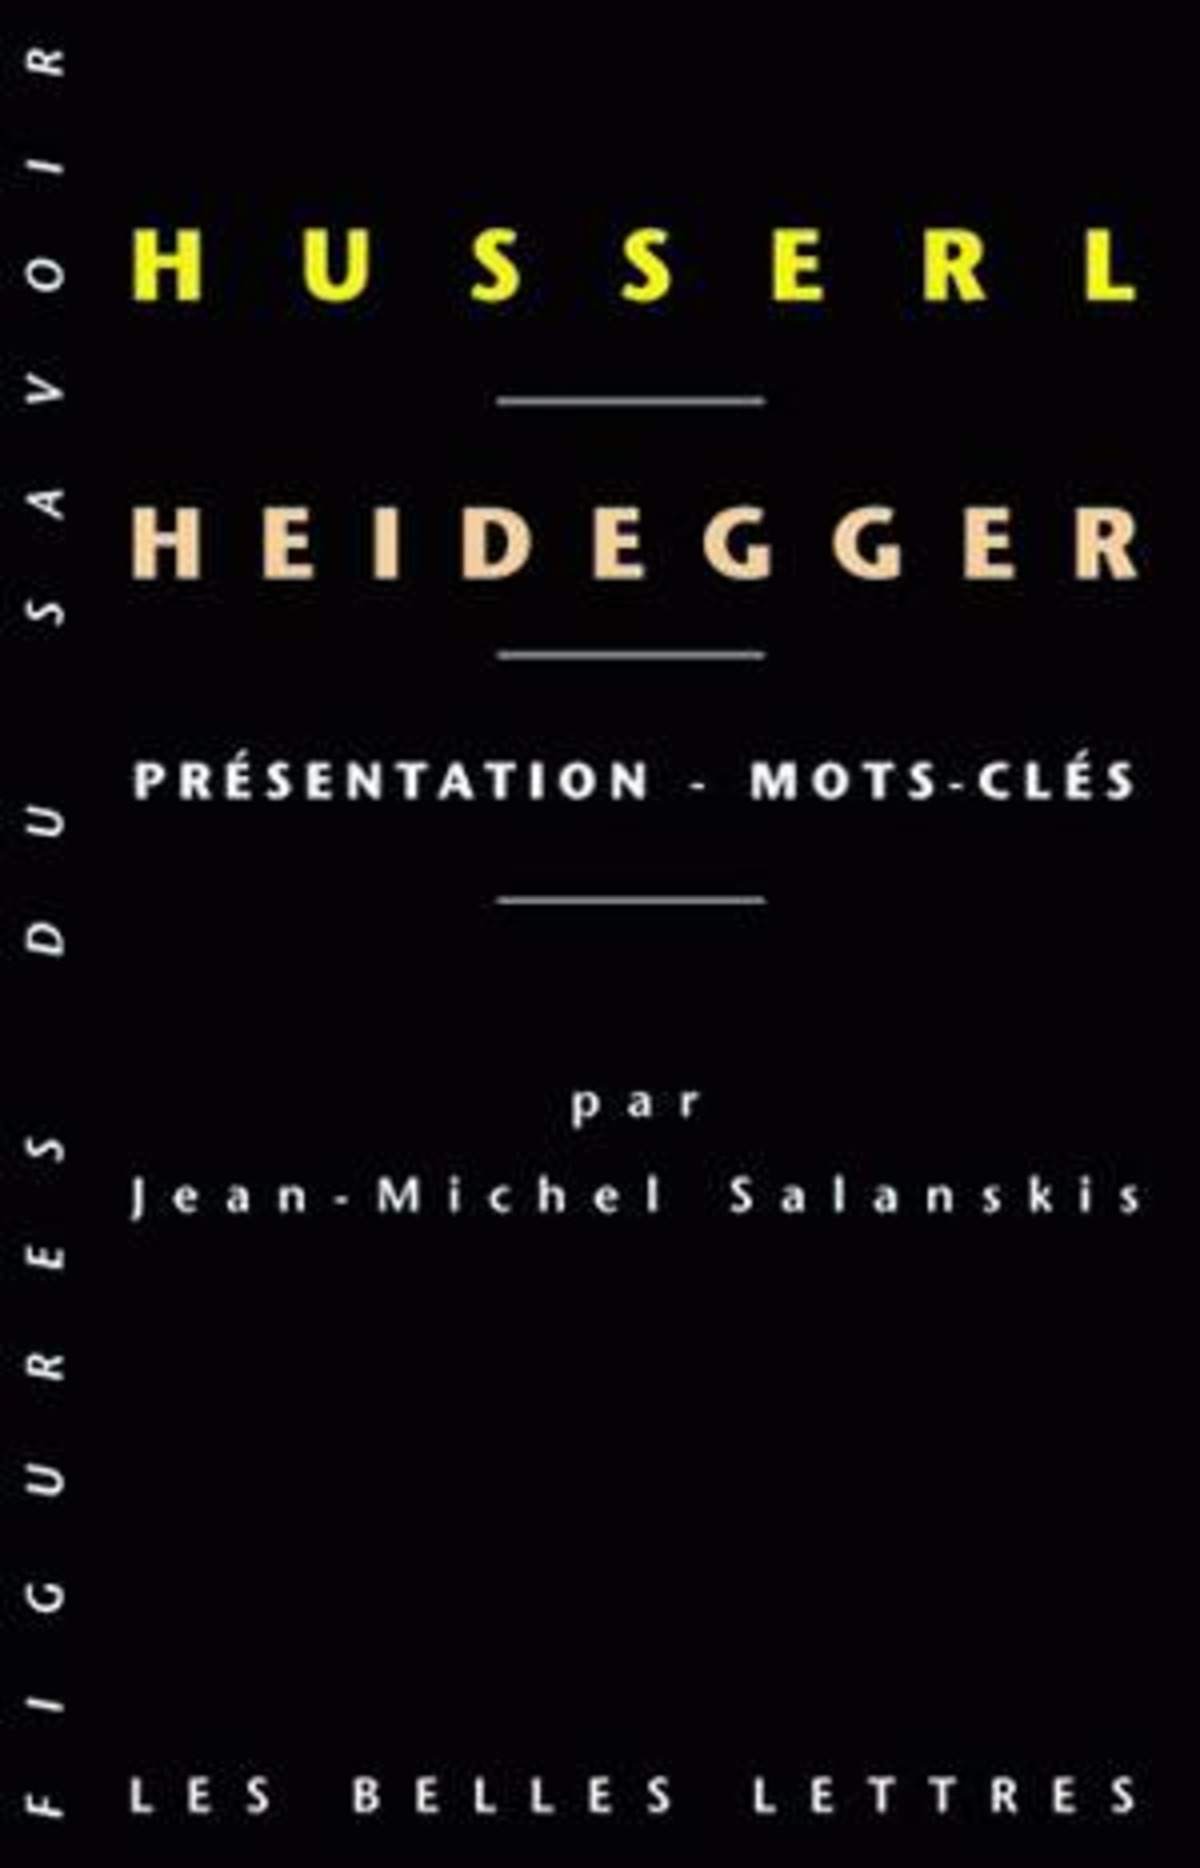 Heidegger - Husserl